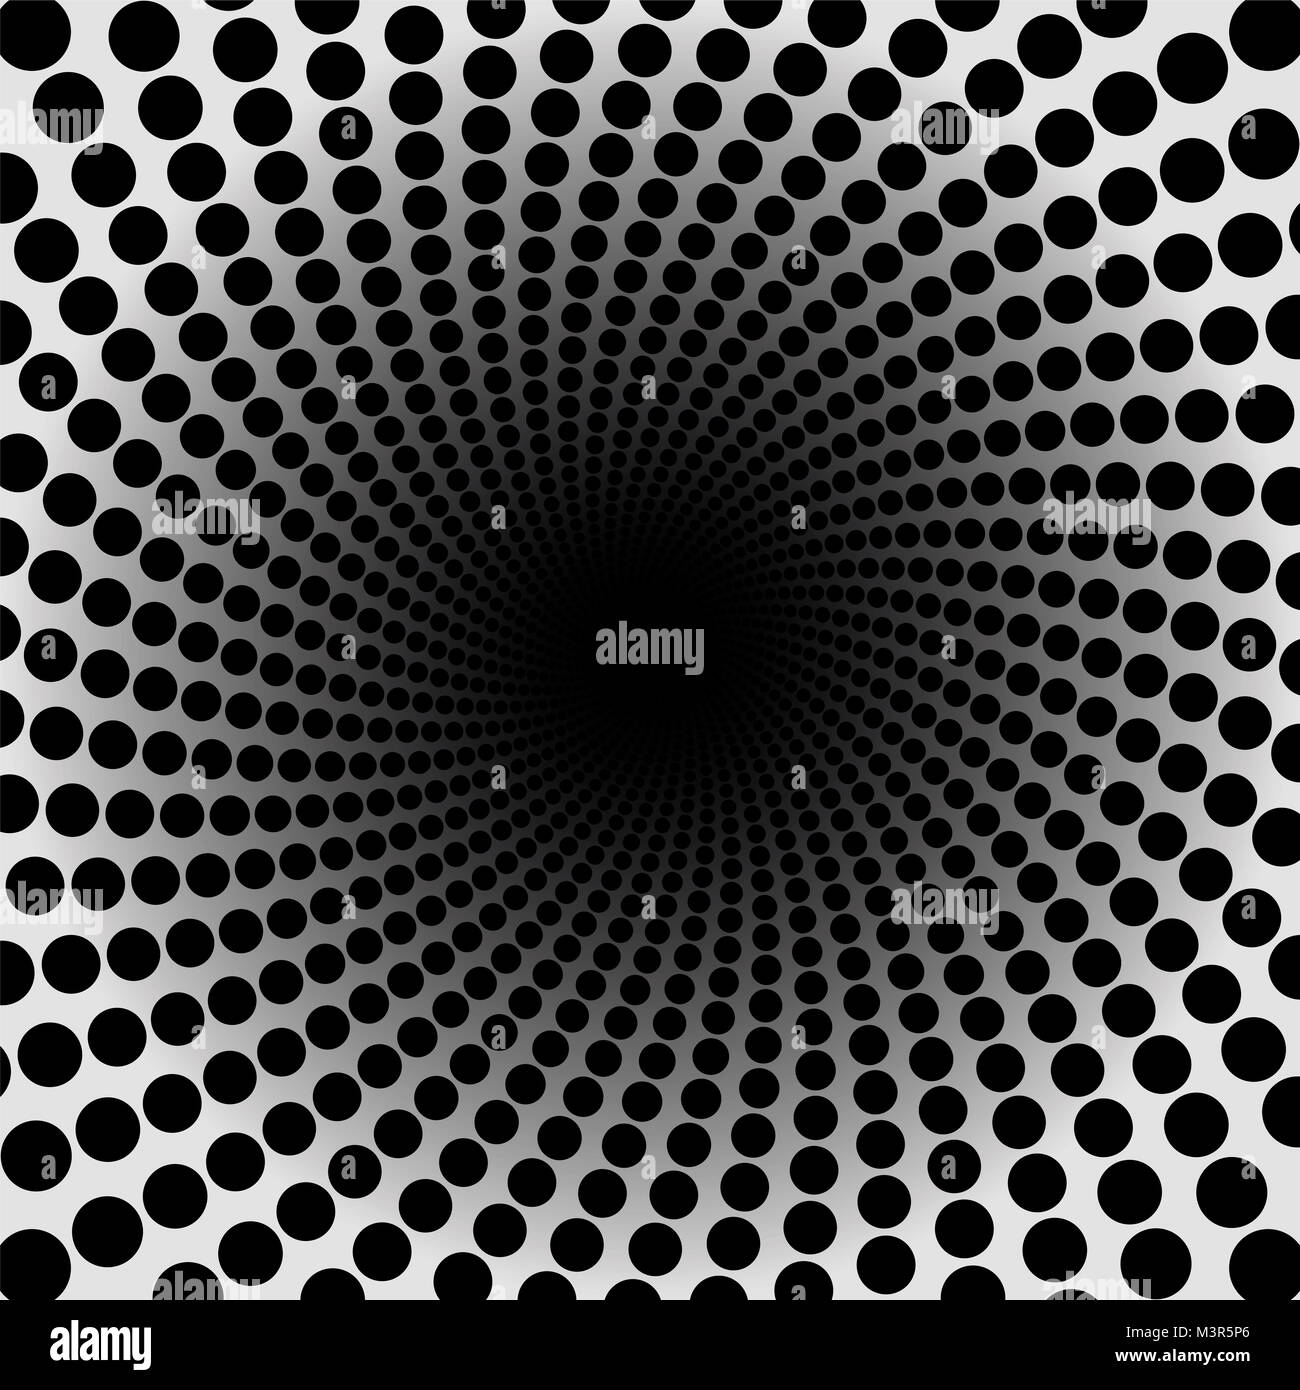 Spiralförmige Muster. Schwarze gepunktete Tunnel mit dunklem Zentrum - Twisted kreisförmigen Hintergrund Illustration, hypnotisch und psychedelisch. Stockfoto